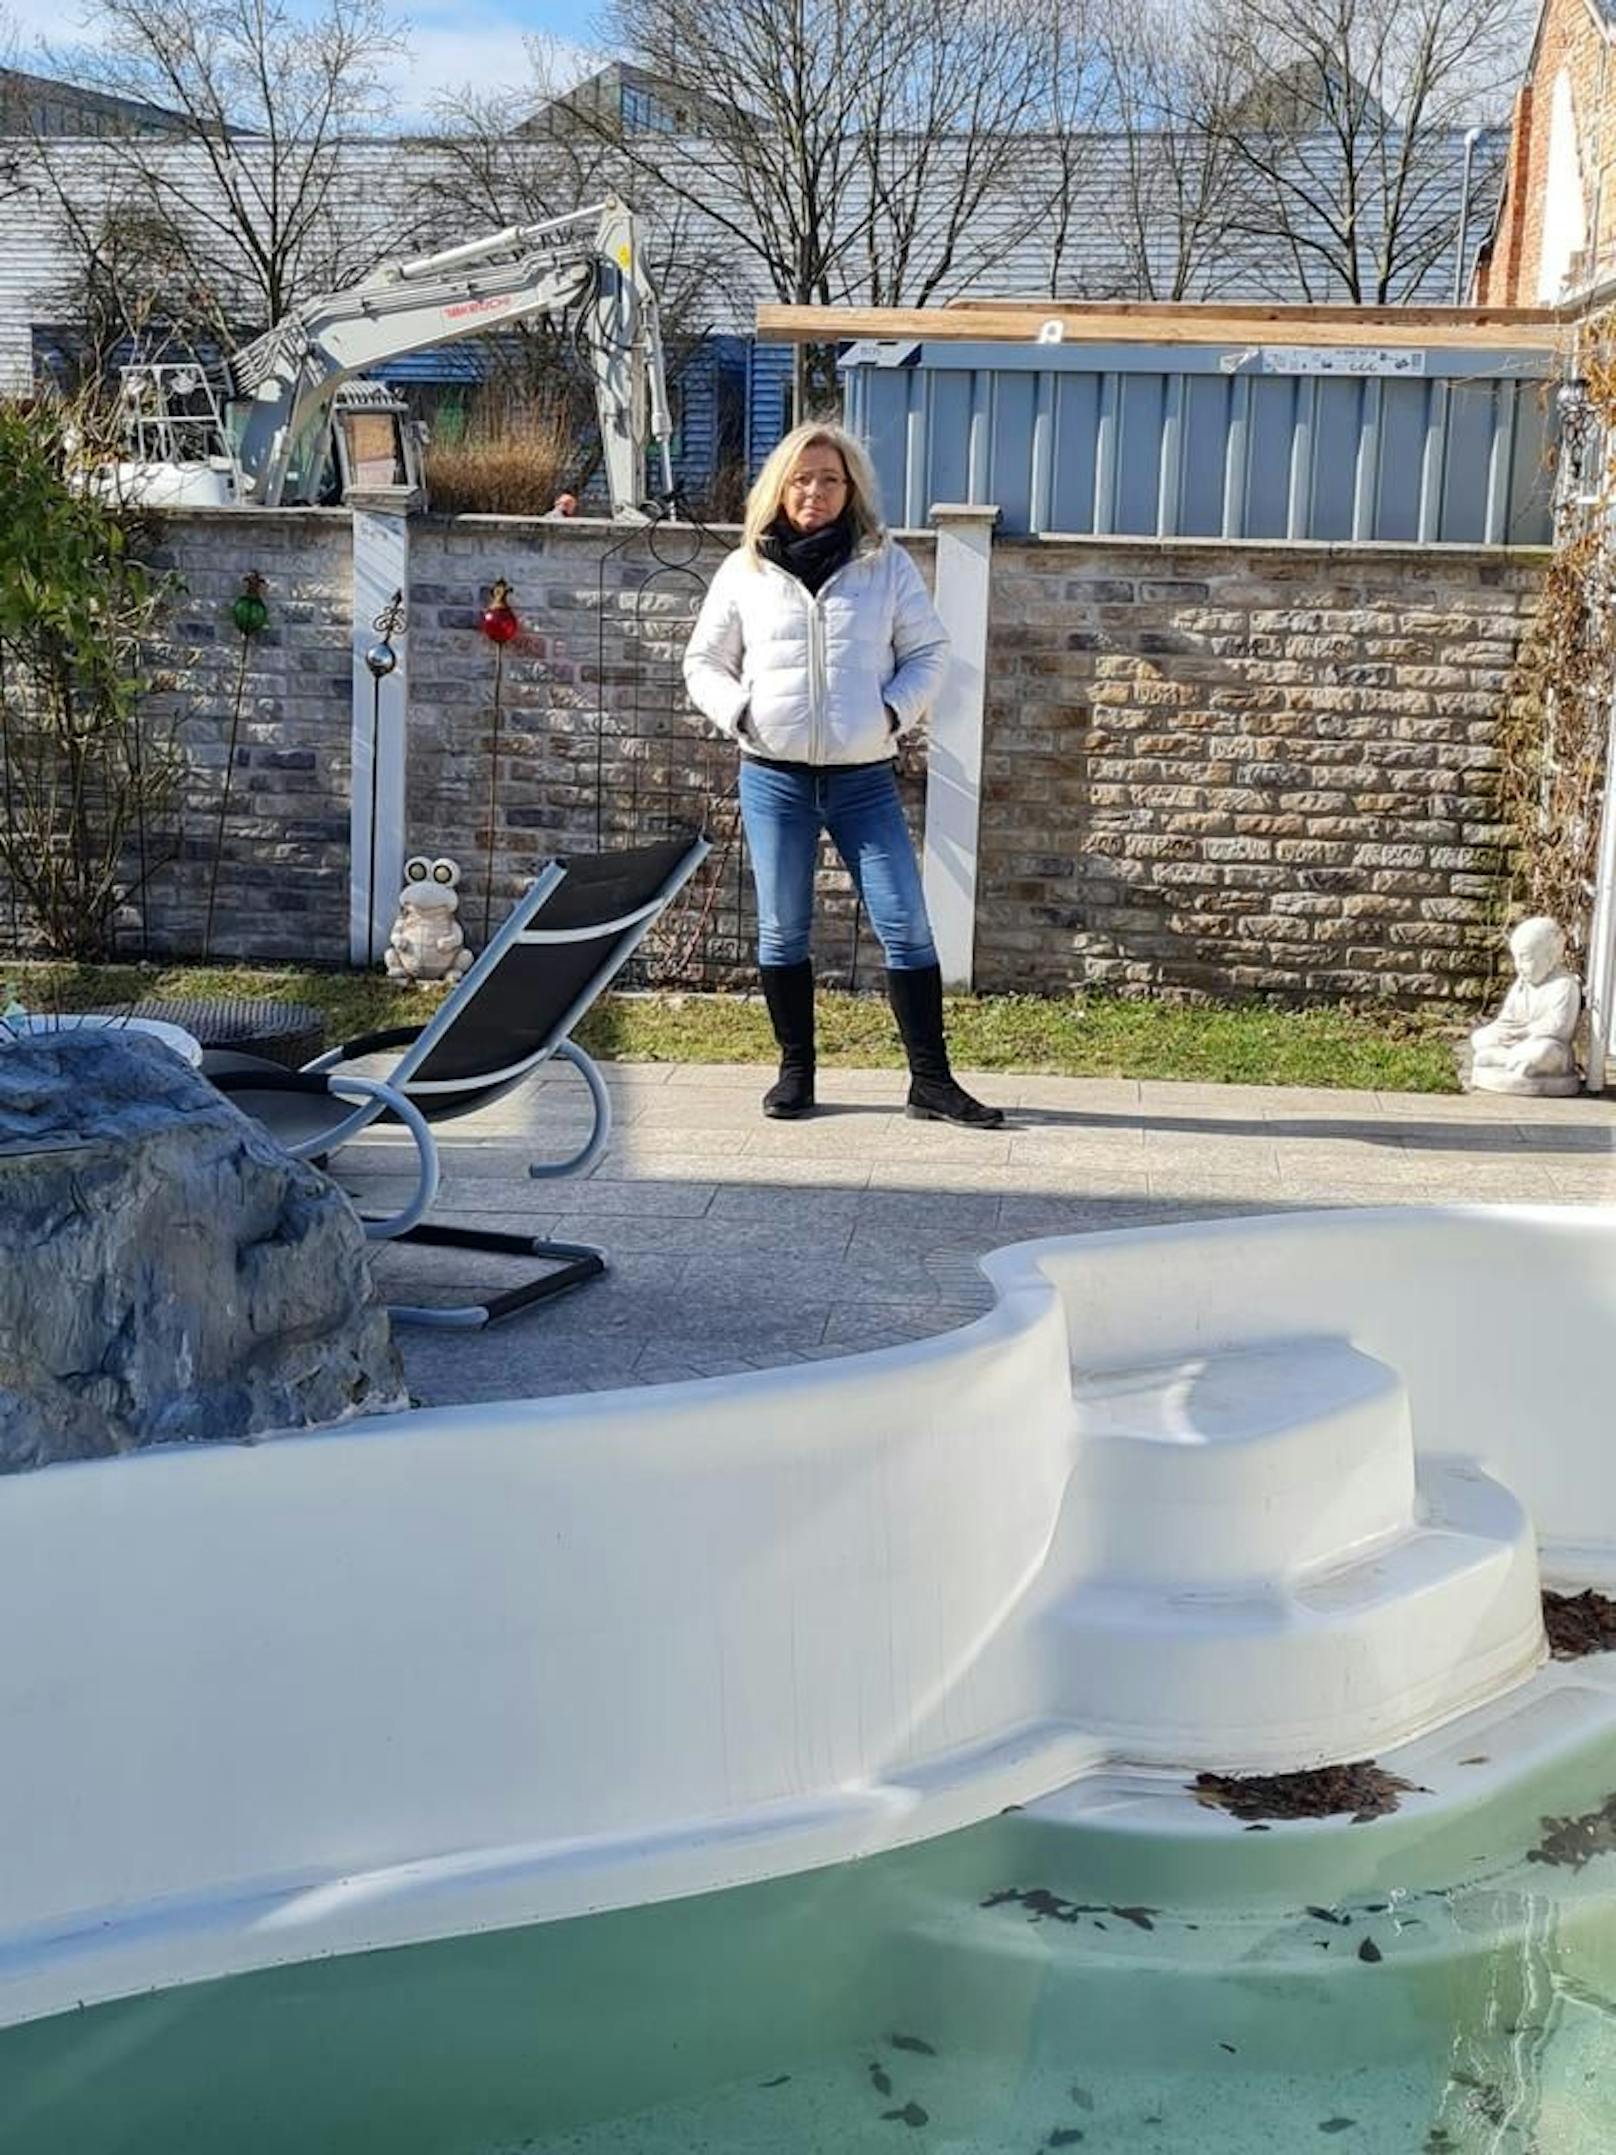 Sonja Schor vor ihrem Pool in St. Pölten: "Super, bald schauen mir zehn oder mehr Nachbarn zu"